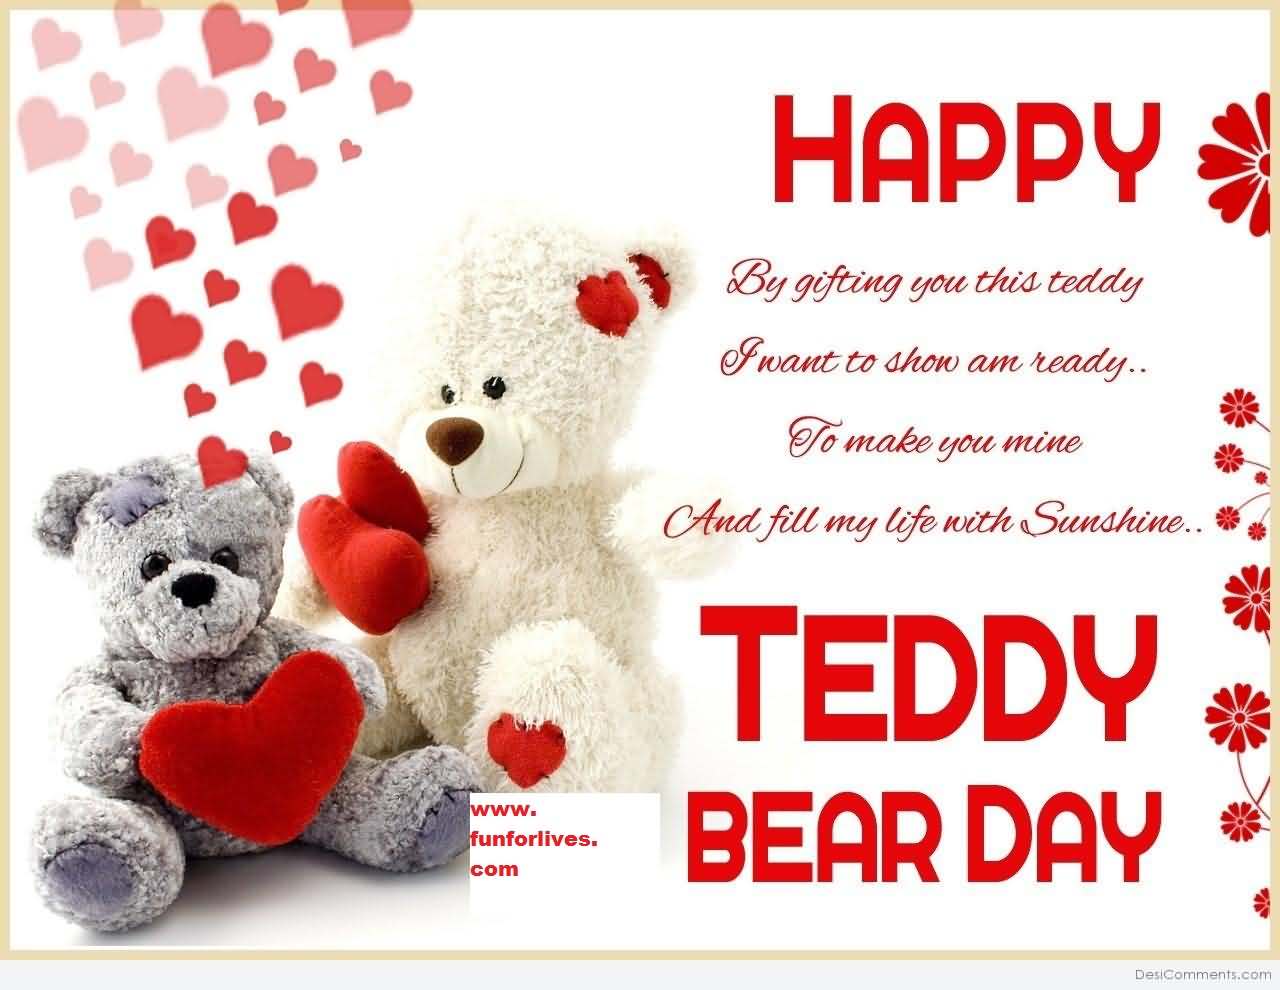 Happy teddy bear day 2018 greeting card